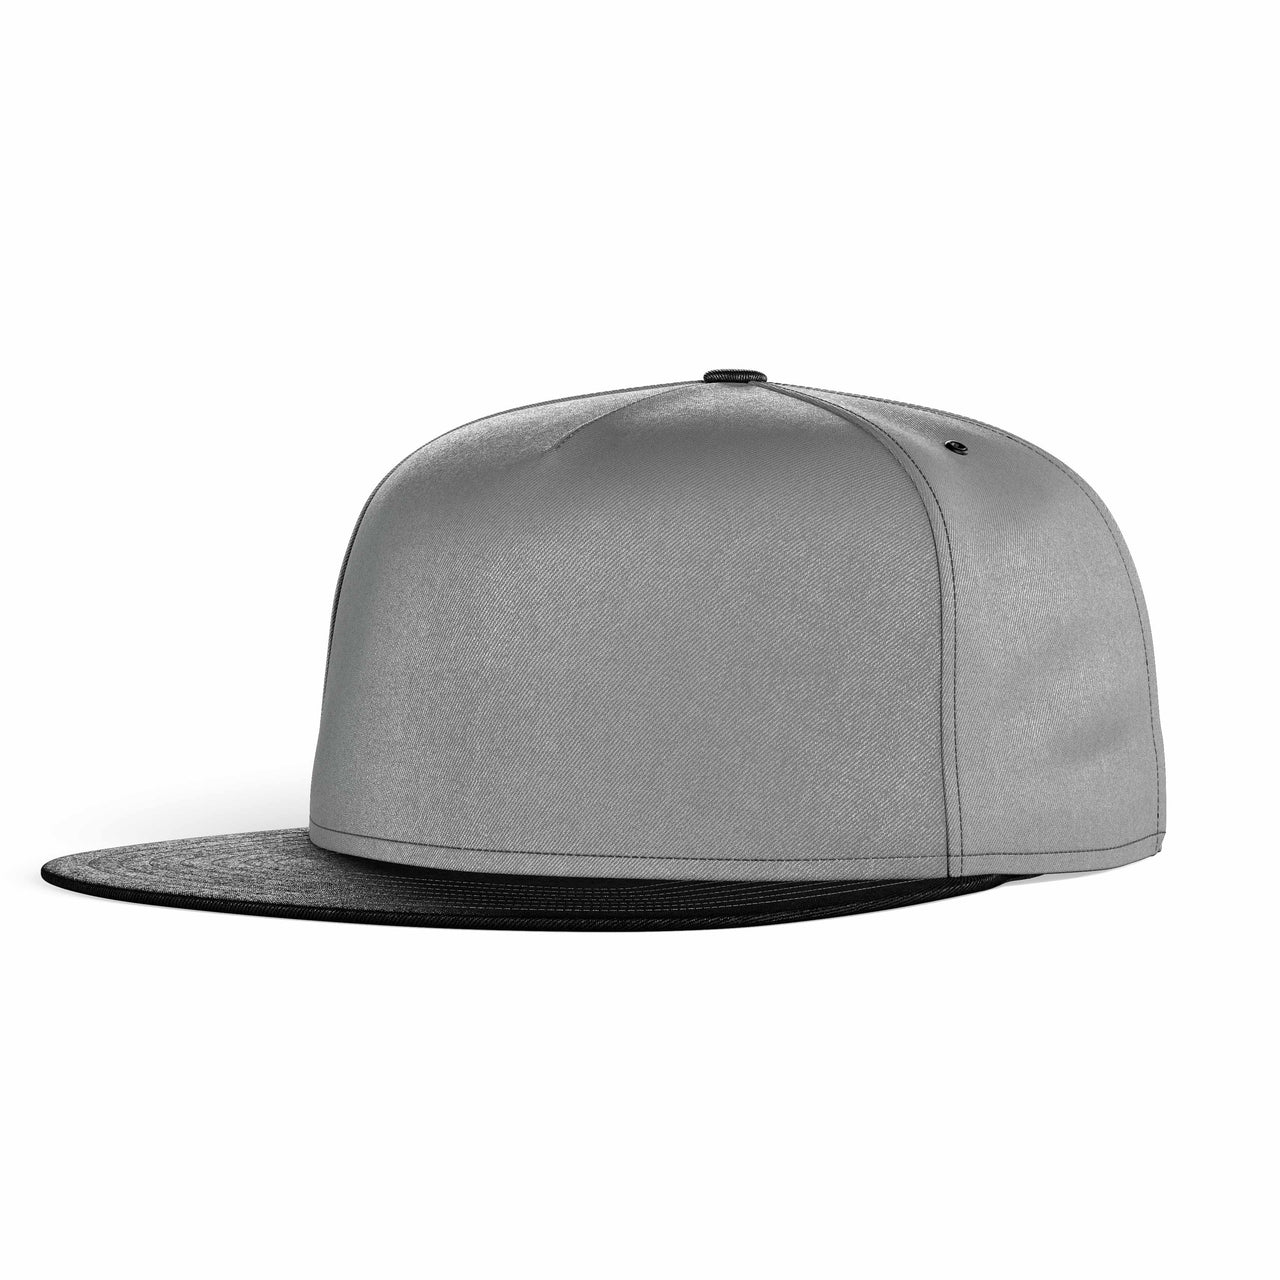 NO Color Super Quality Snapback Caps & Hats